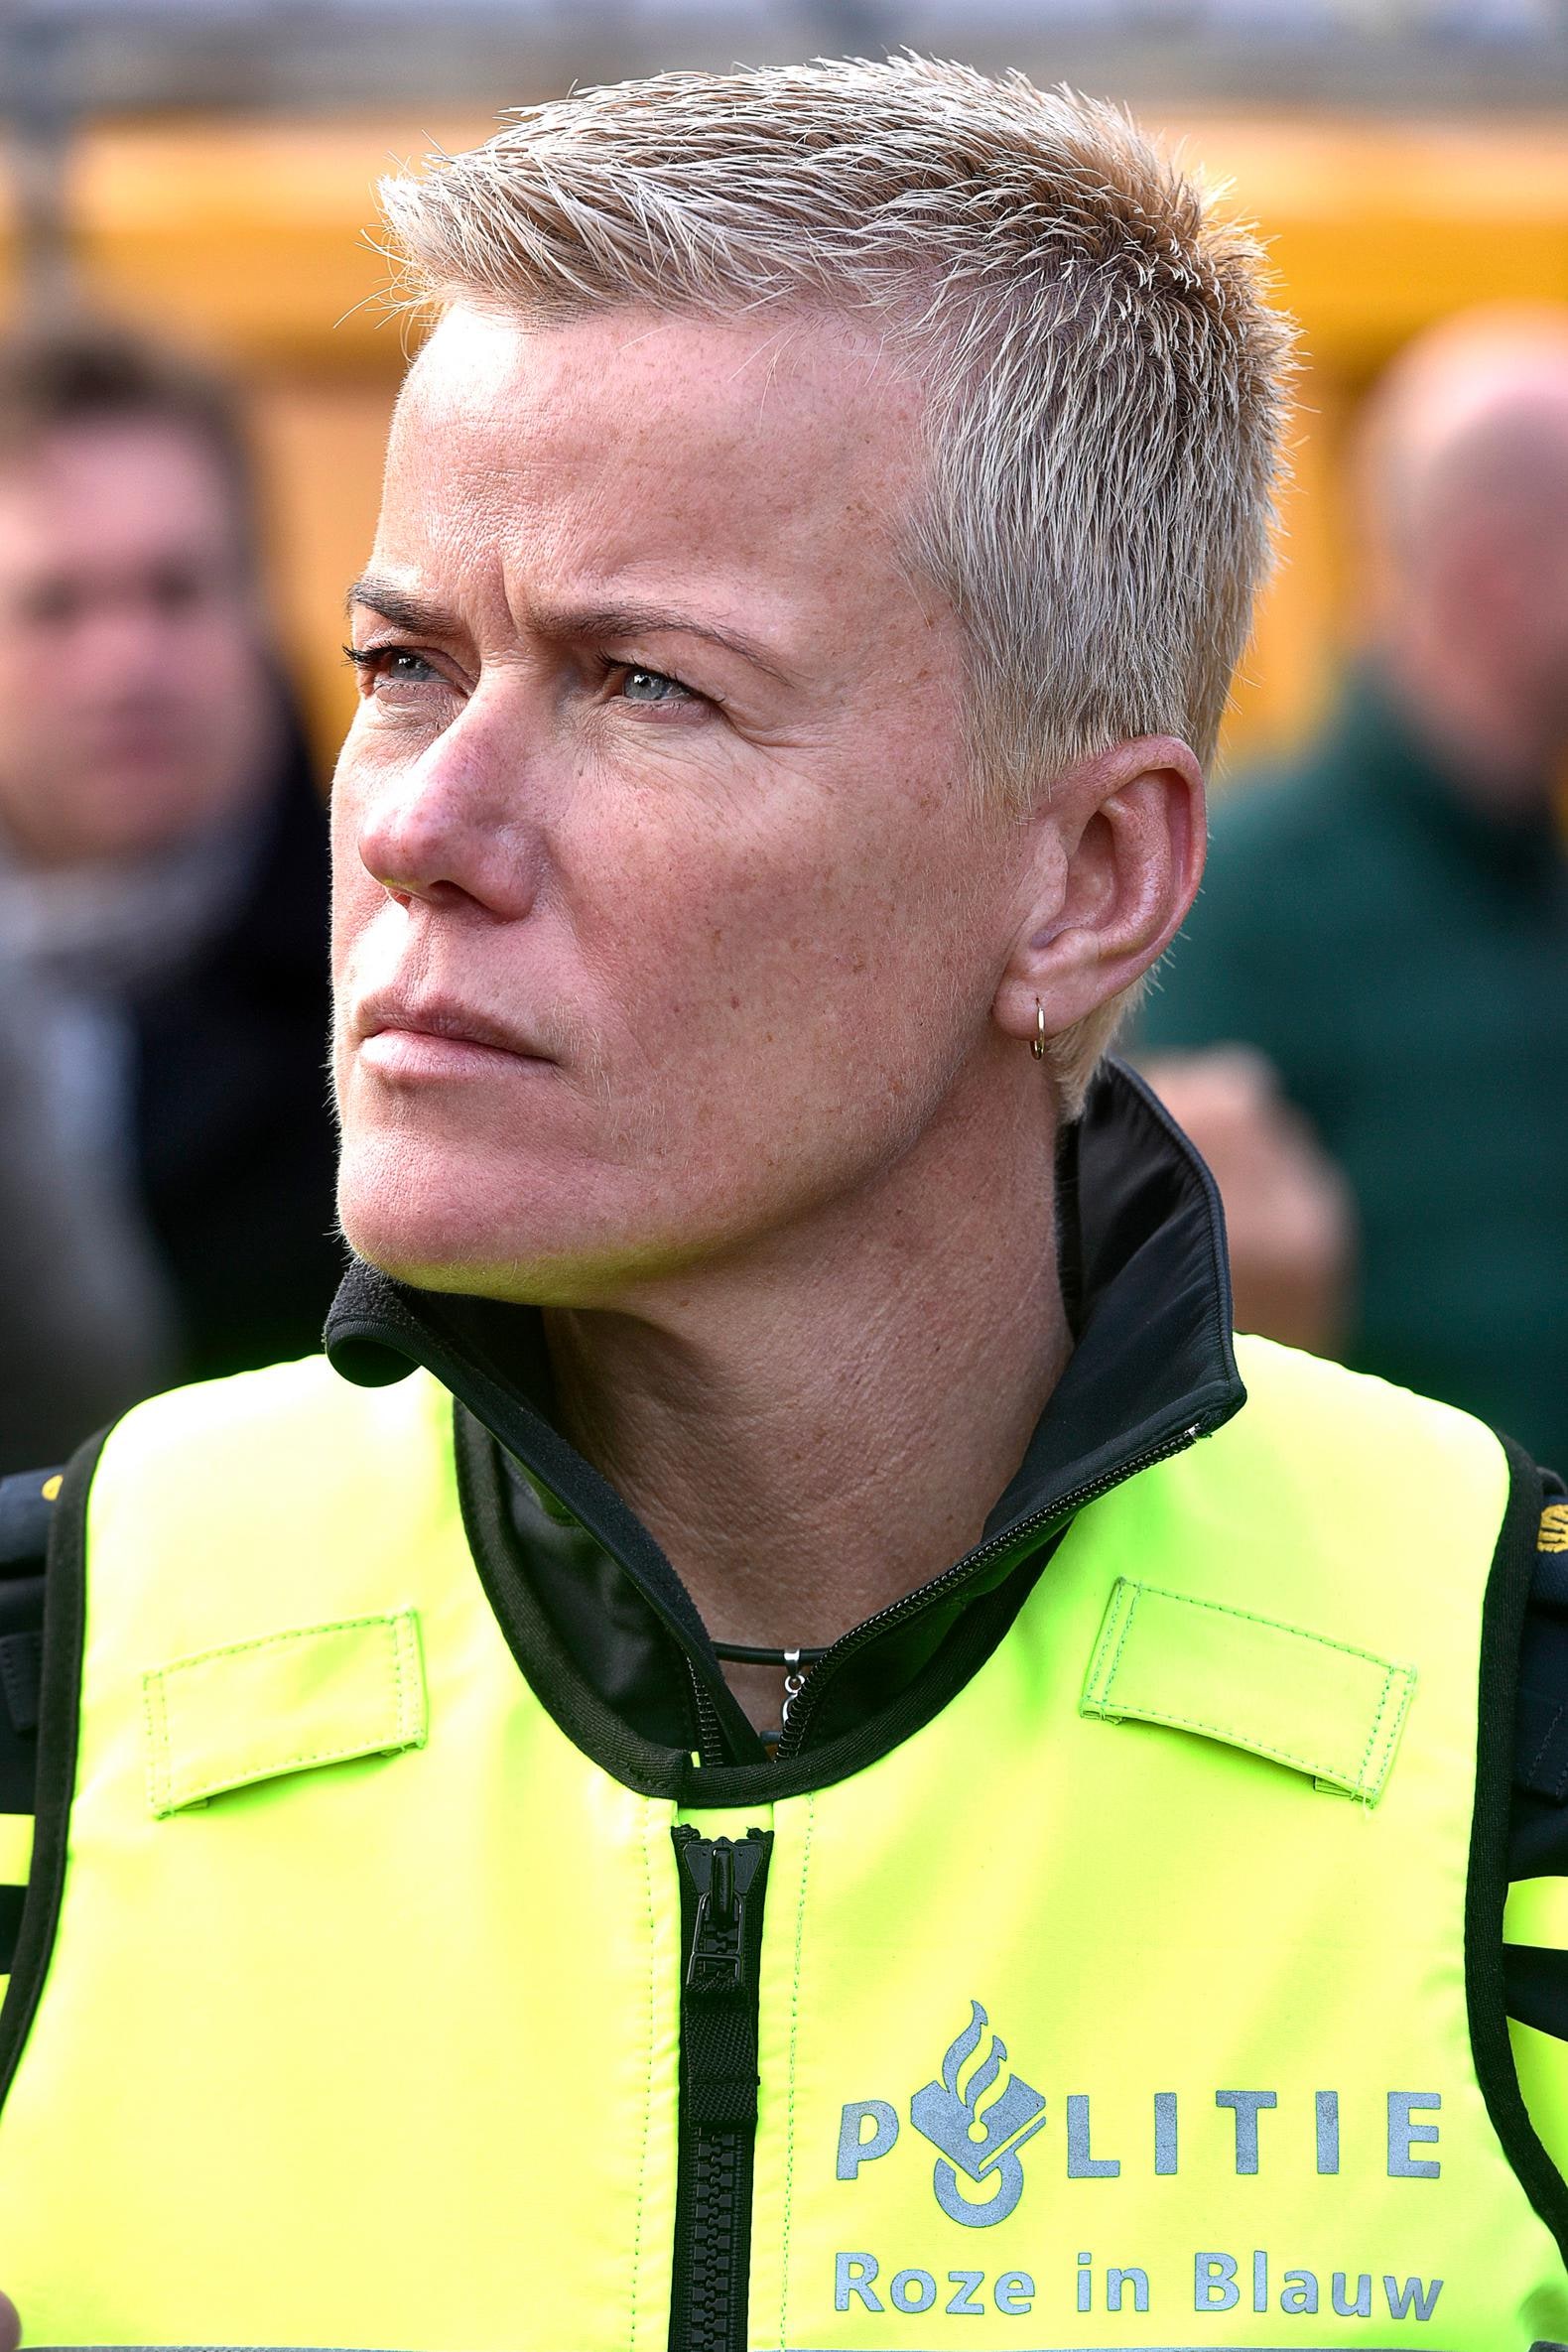 Woordvoerder Ellie Lust weg bij politie Amsterdam